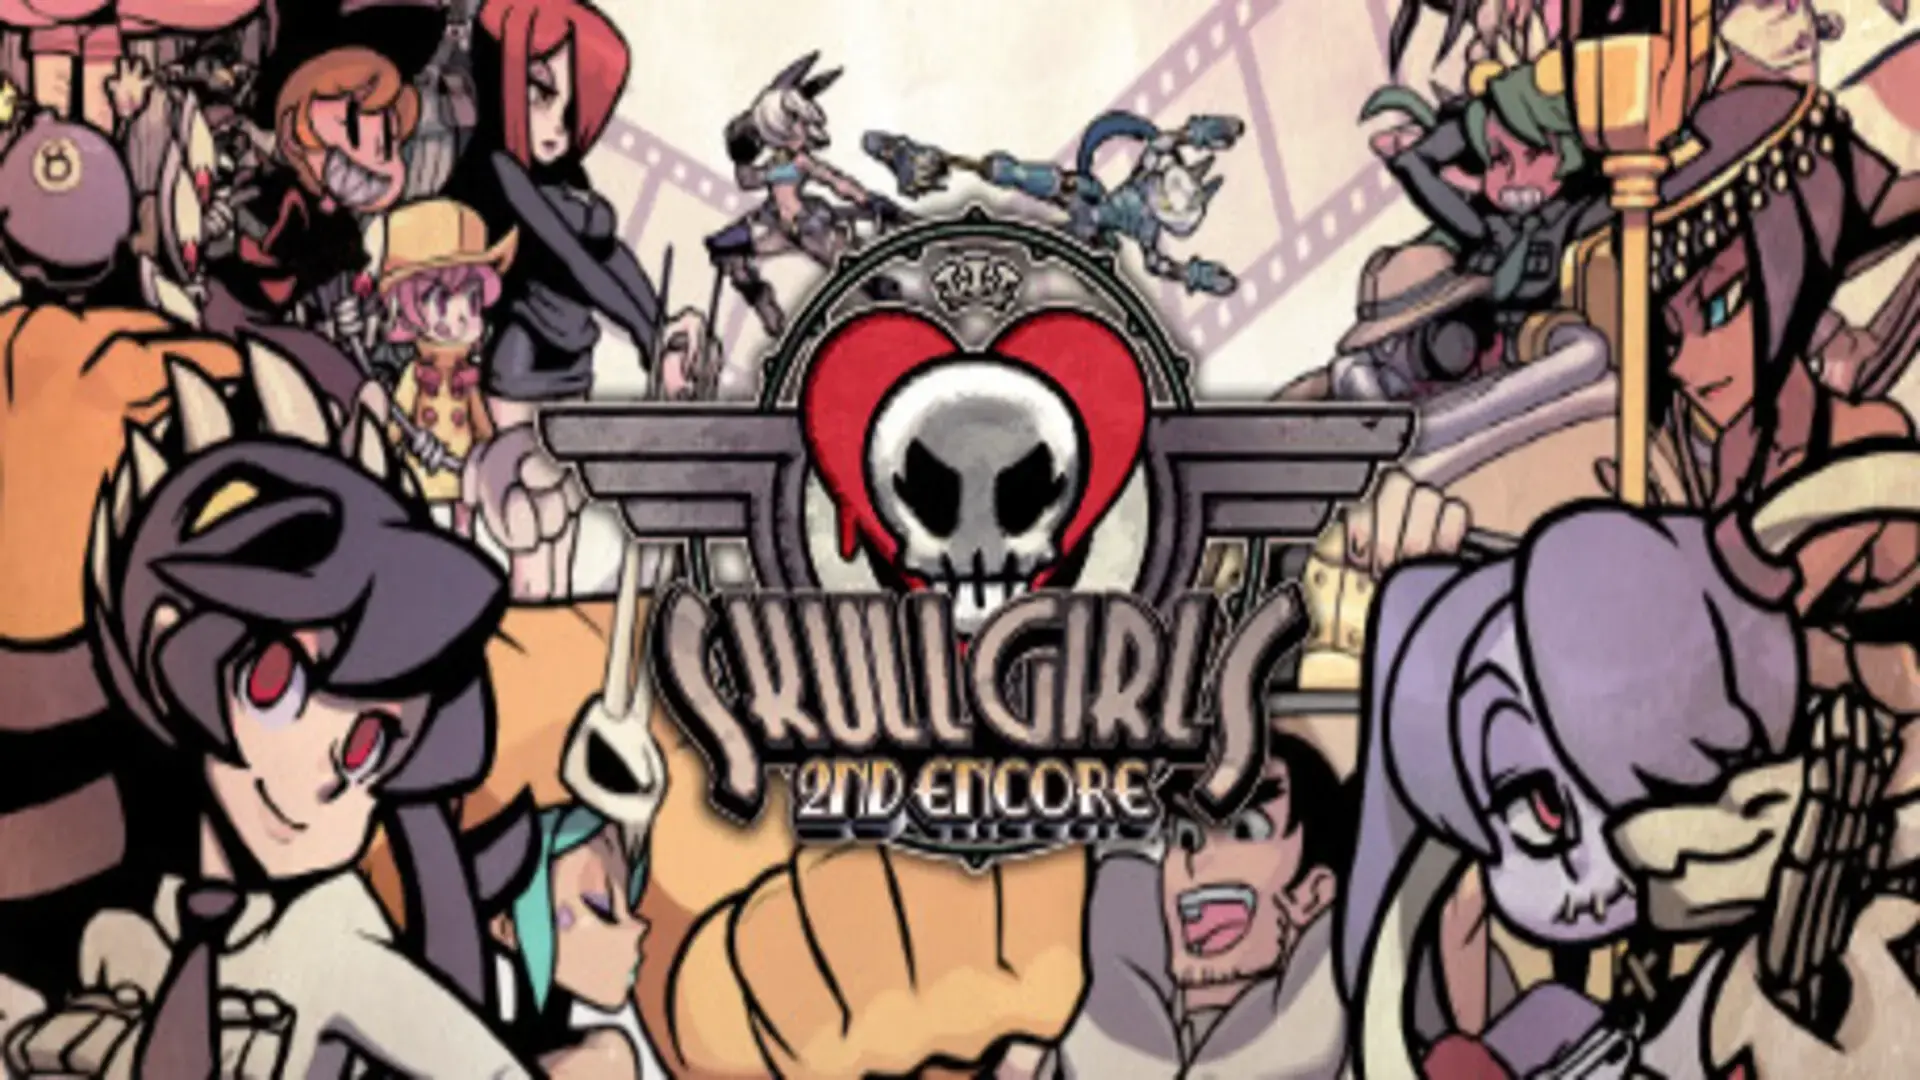 Skullgirls 2nd Encore – Free Download (v3.5.12)